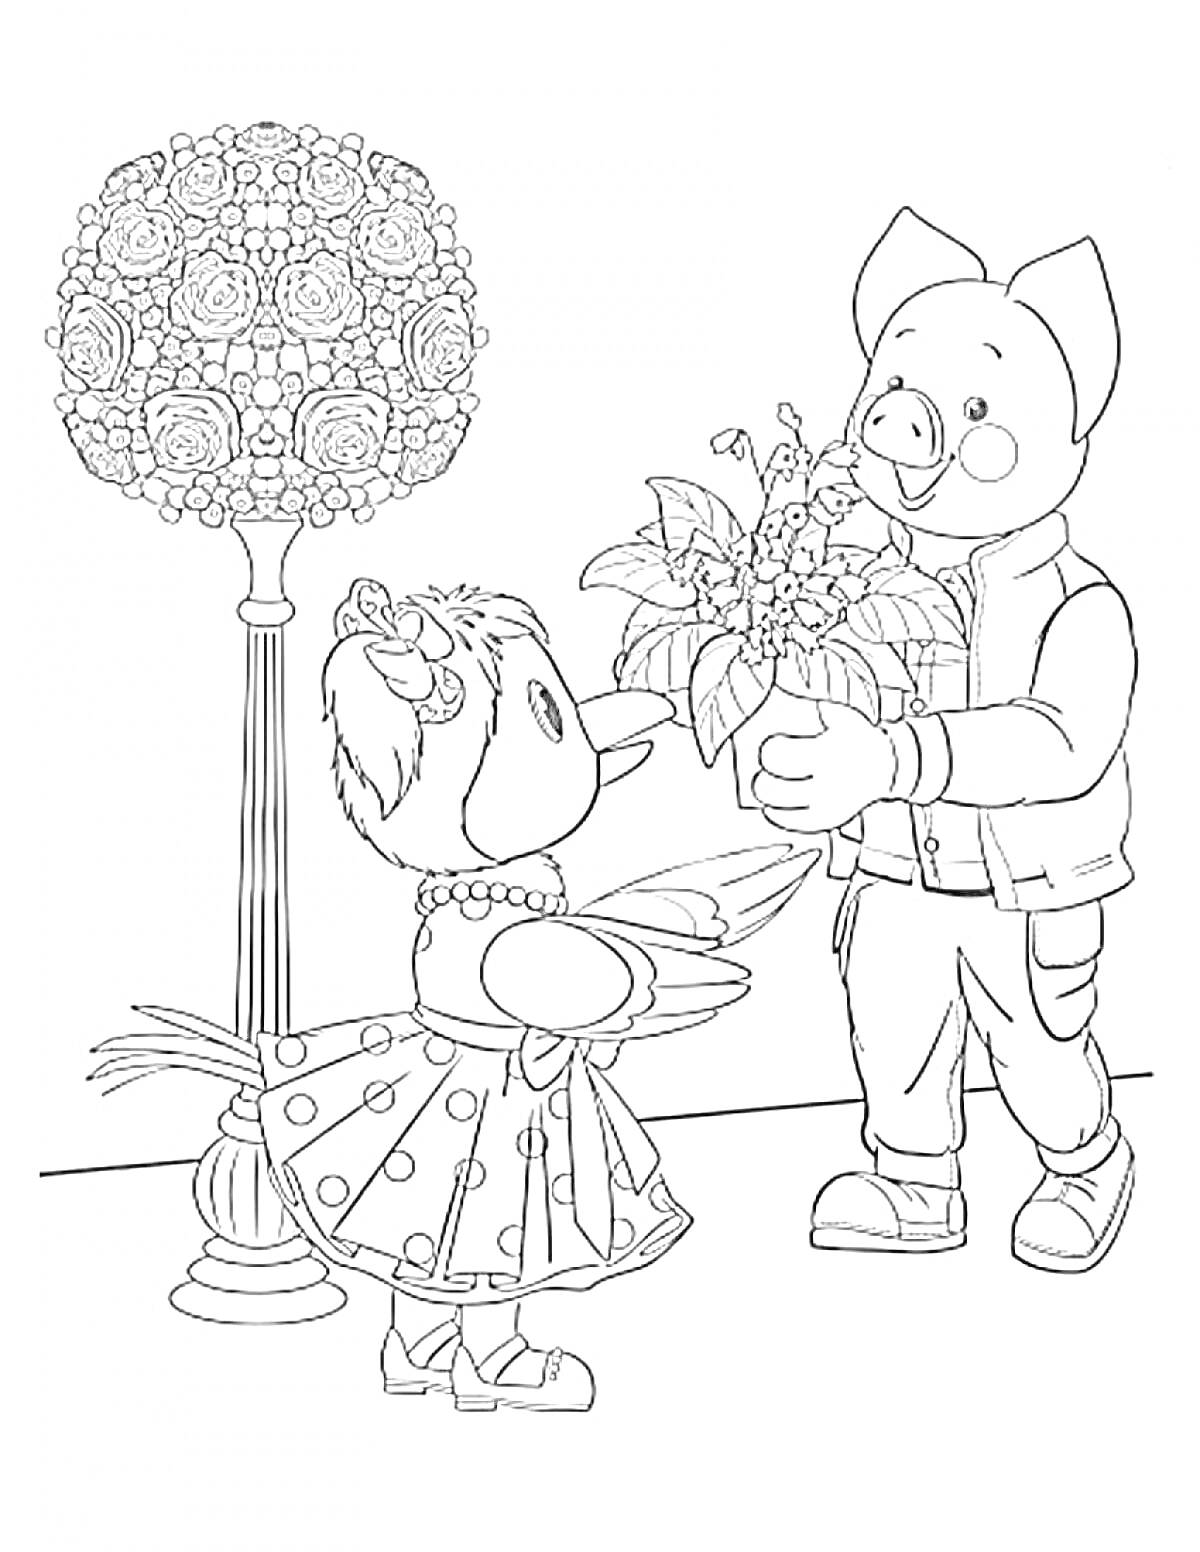 Девочка-птичка в платье с крылышками и бантом принимает букет цветов от мальчика-свиньи рядом с декоративным фонарем